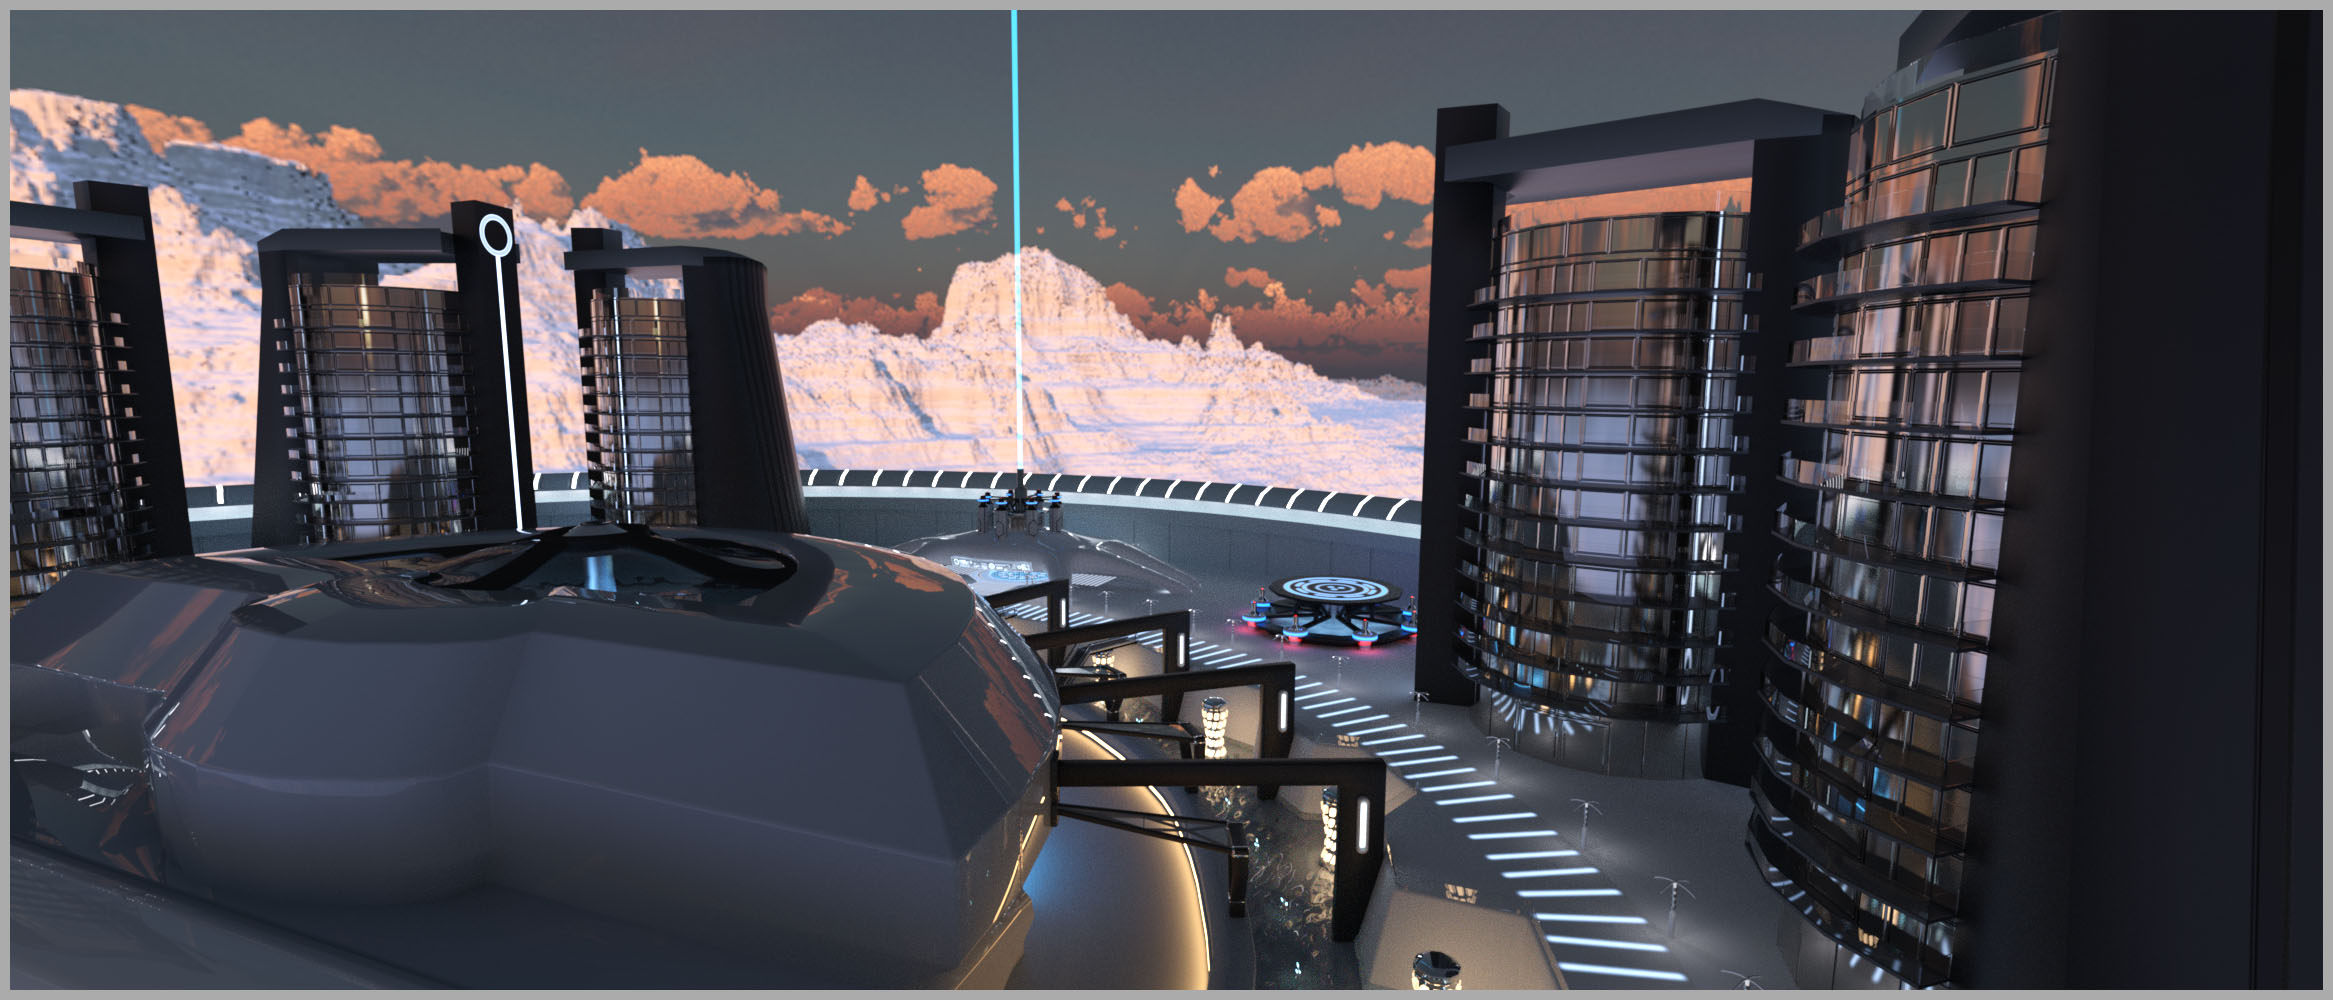 Sci-fi Transit Terminal by: Studio360, 3D Models by Daz 3D